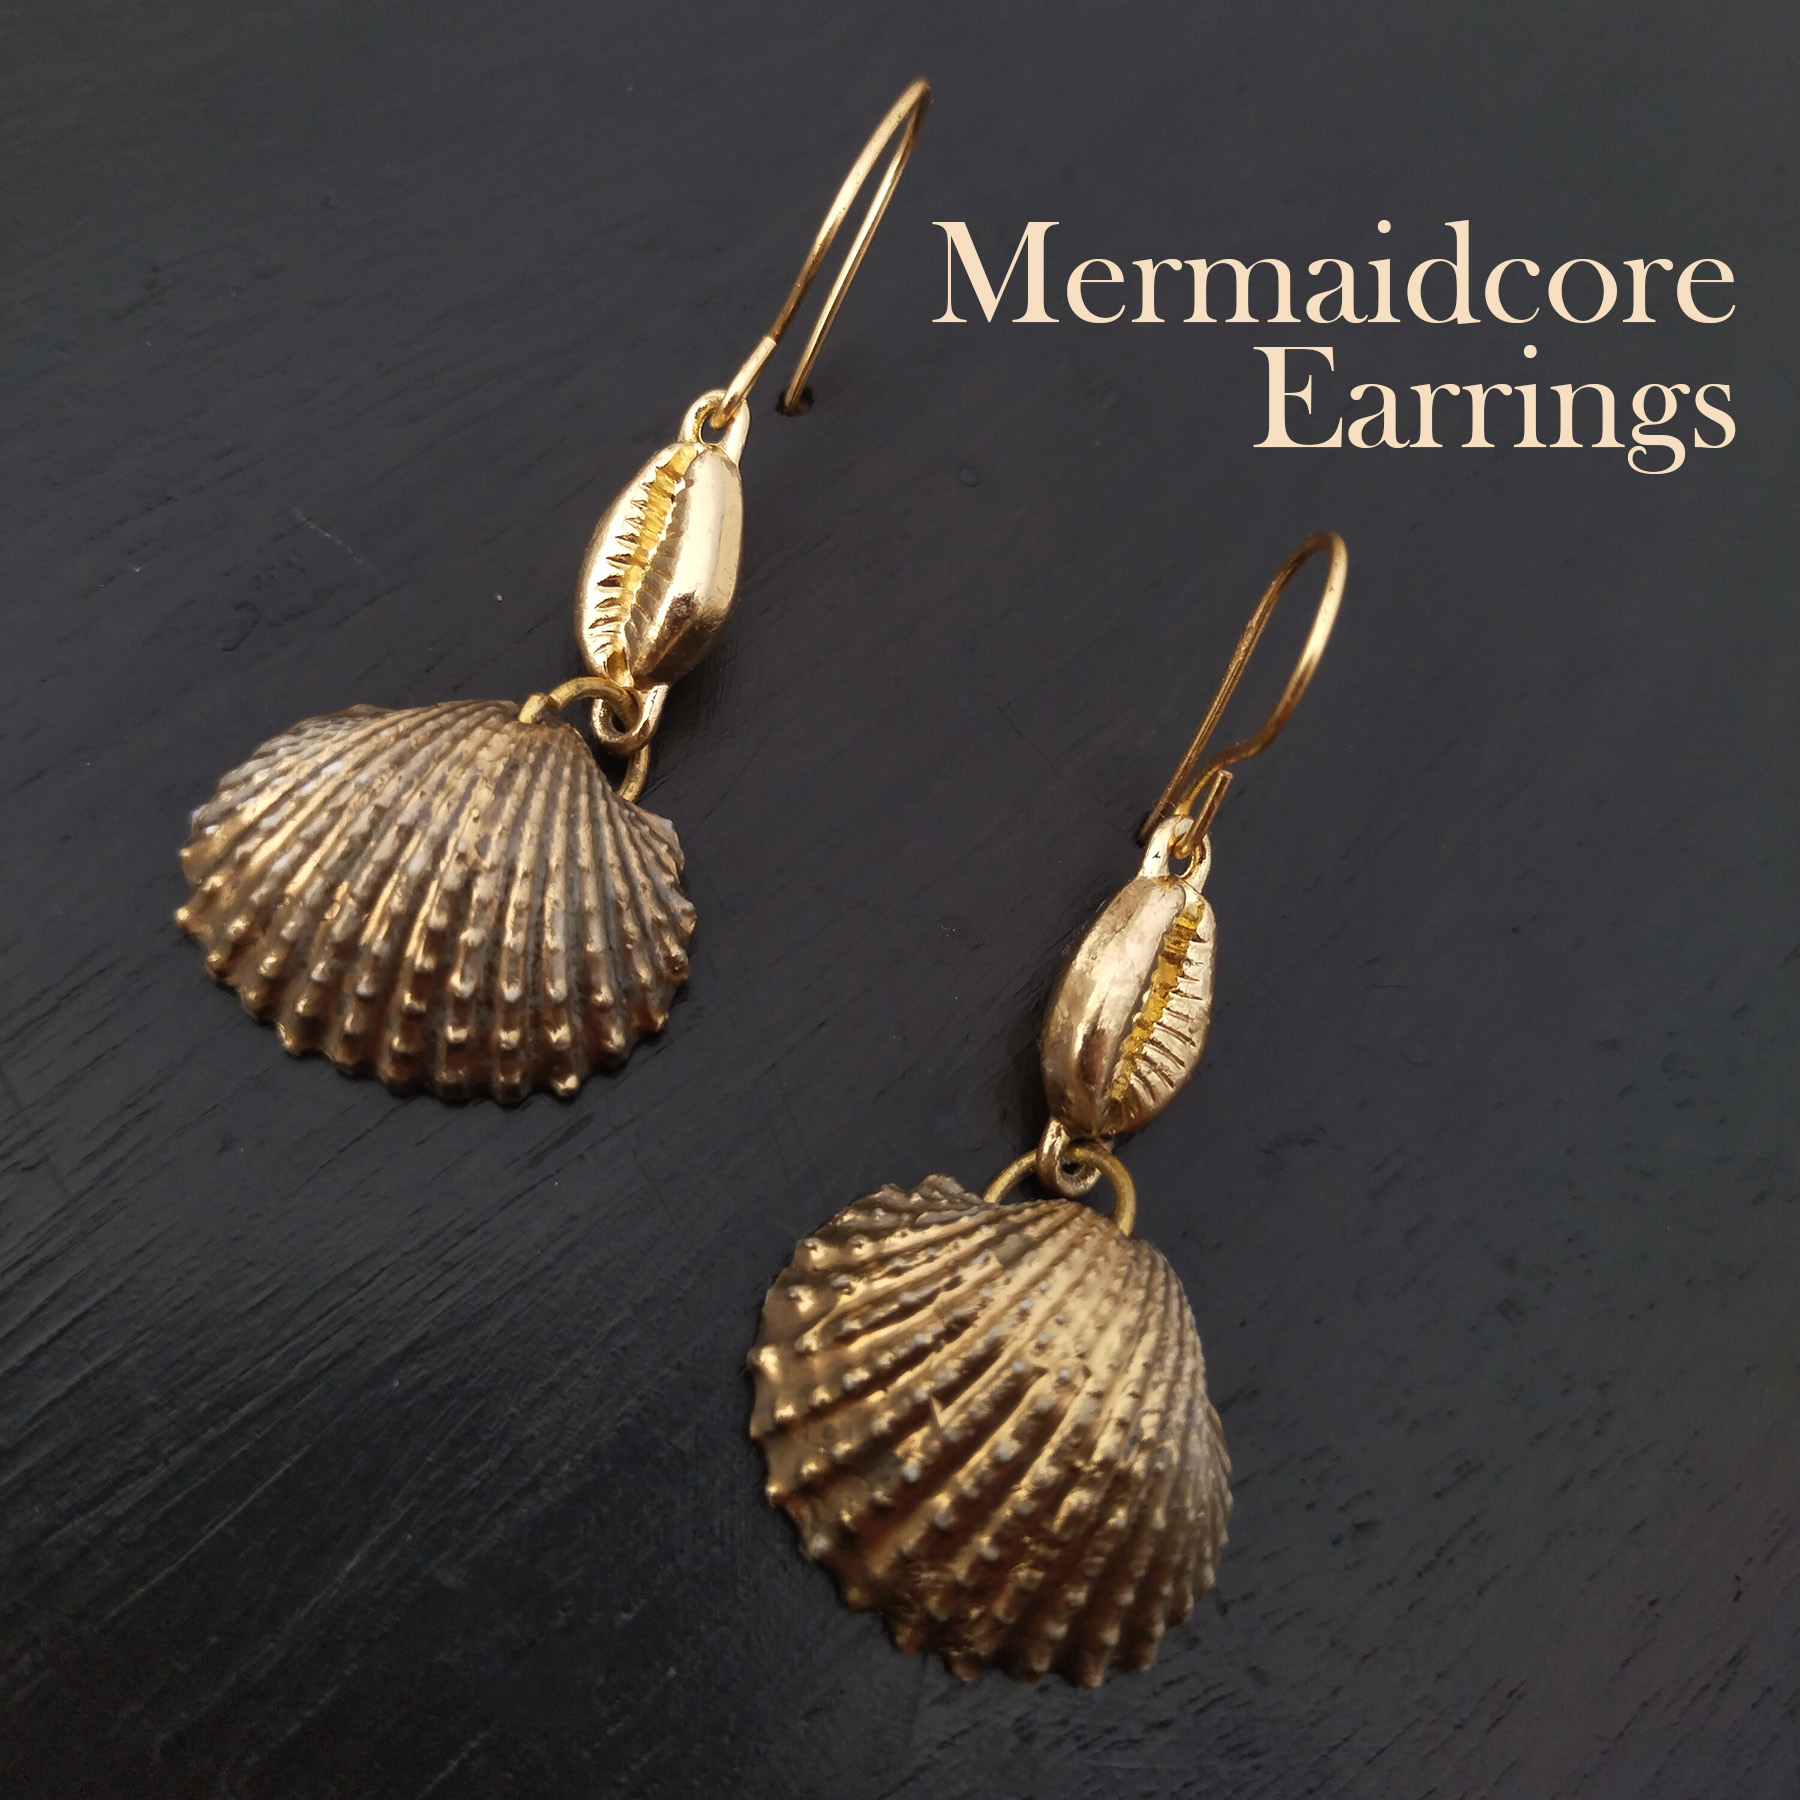 DIY Mermaidcore shell earrings tutorial